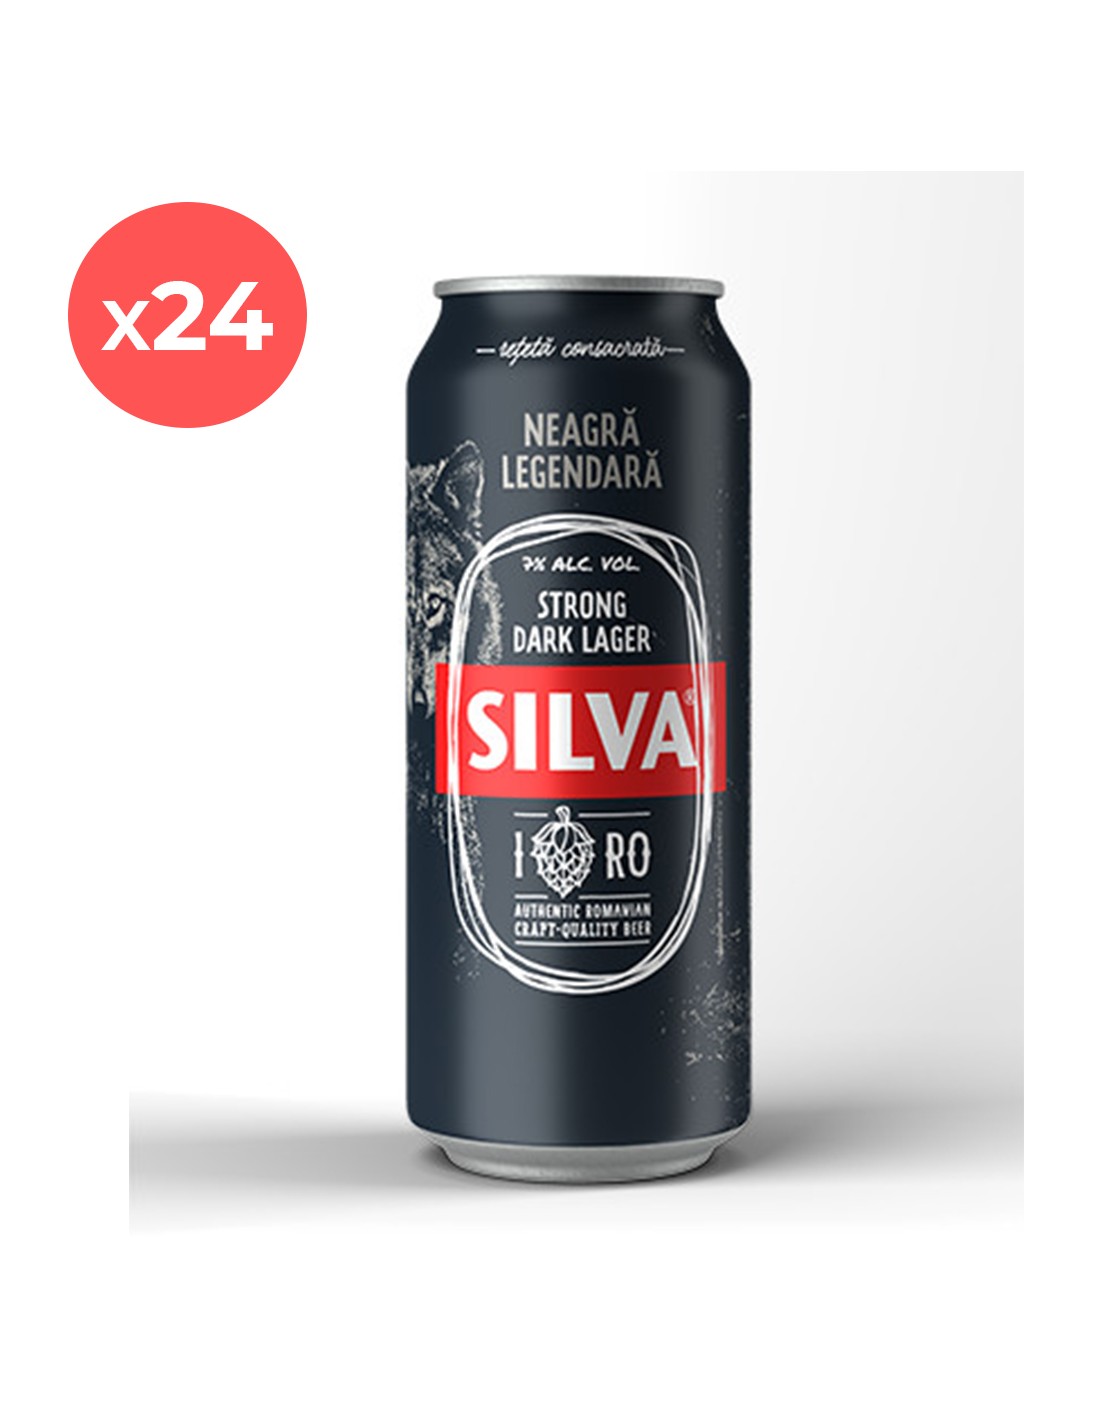 Bax 24 bucati bere neagra, Lager, Silva, 7% alc., 0.5L, doza, Romania